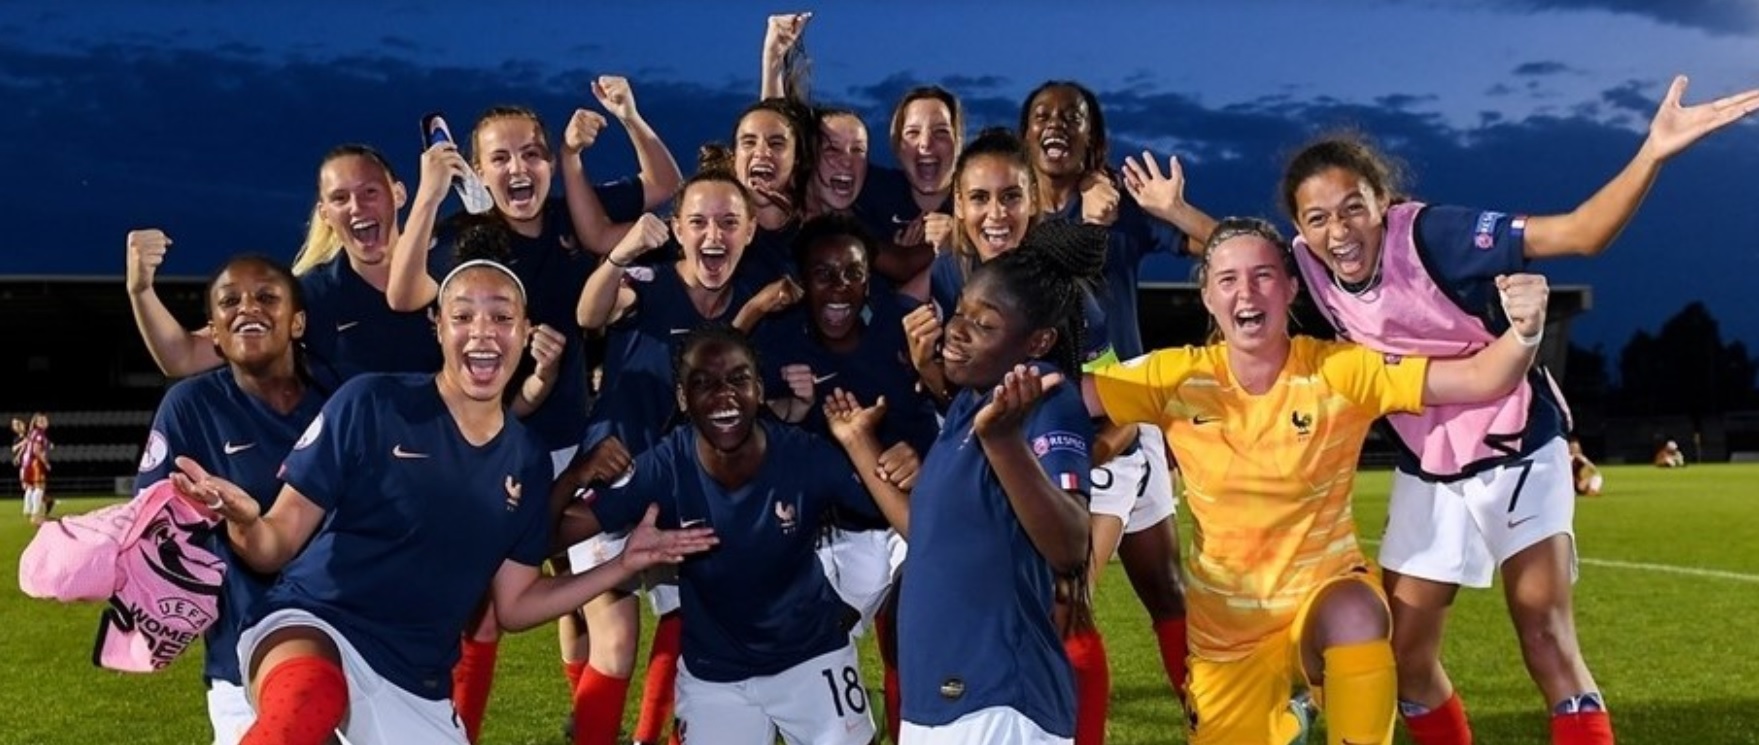 La joie tricolore (photo UEFA.com)